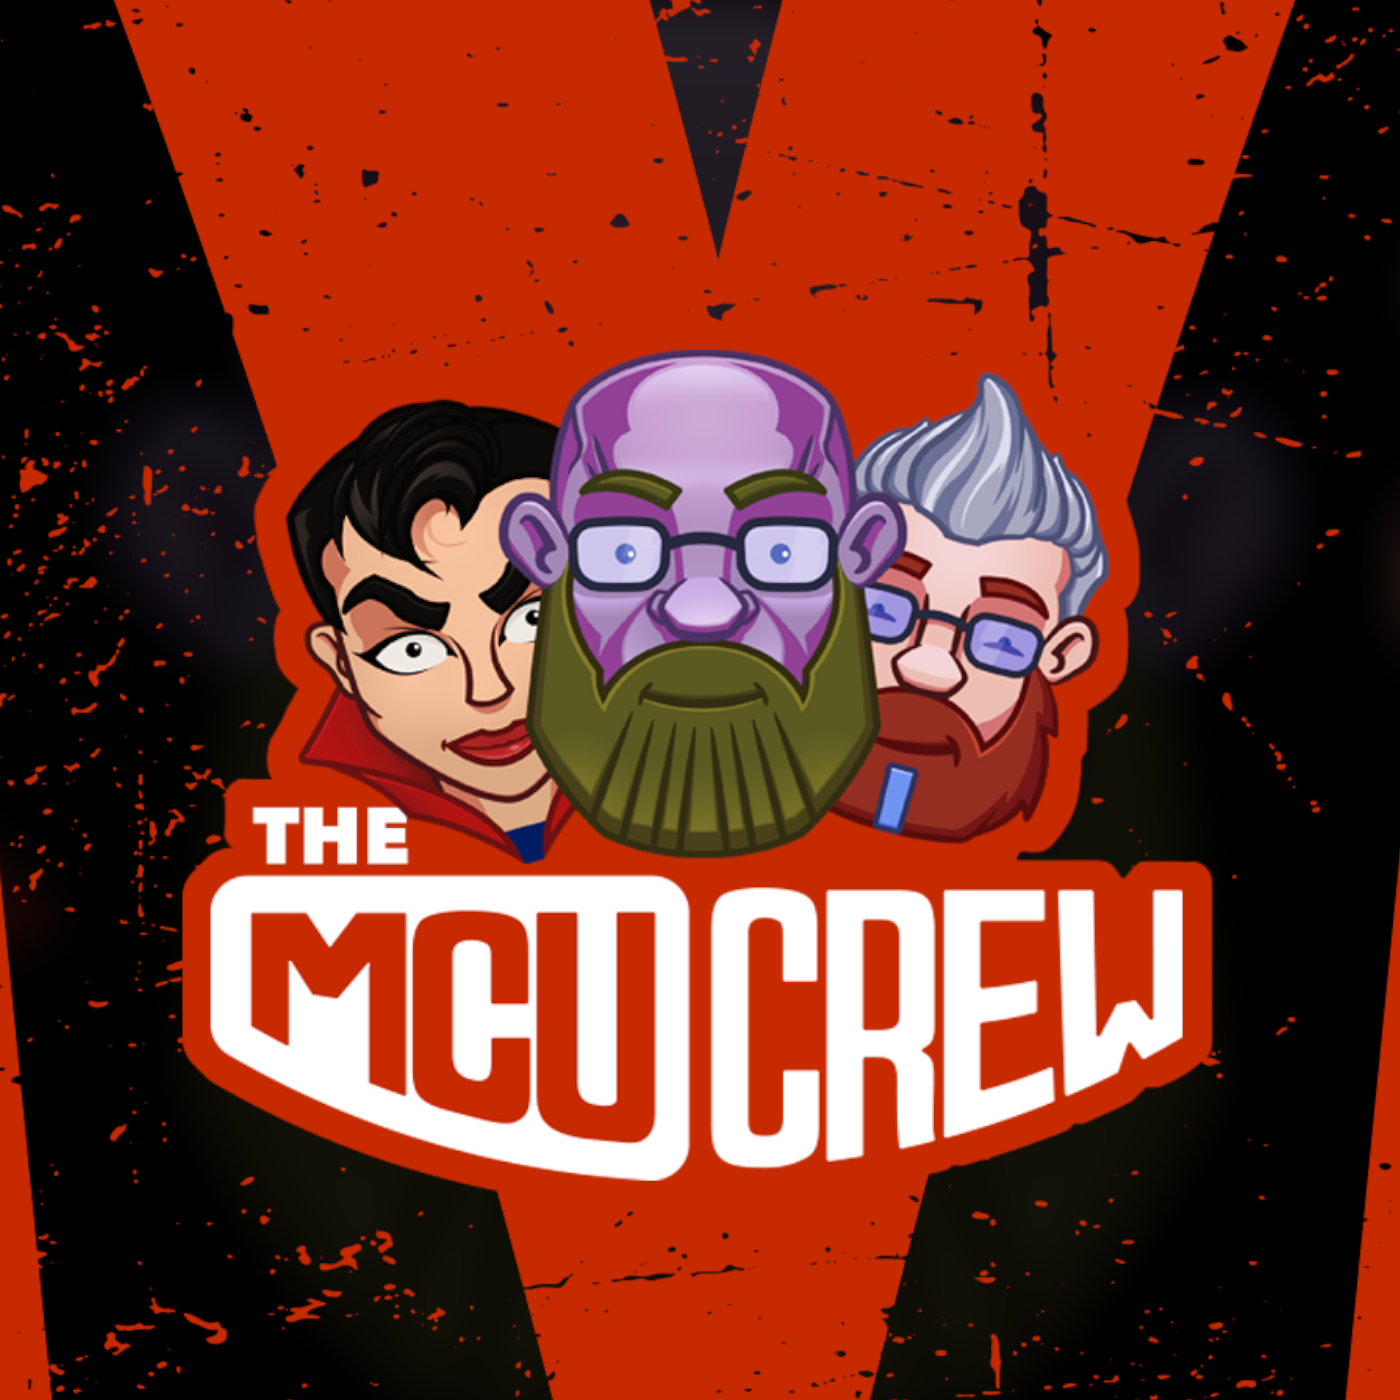 The MCU Crew Ep. 82 - The Catch-Up Crew